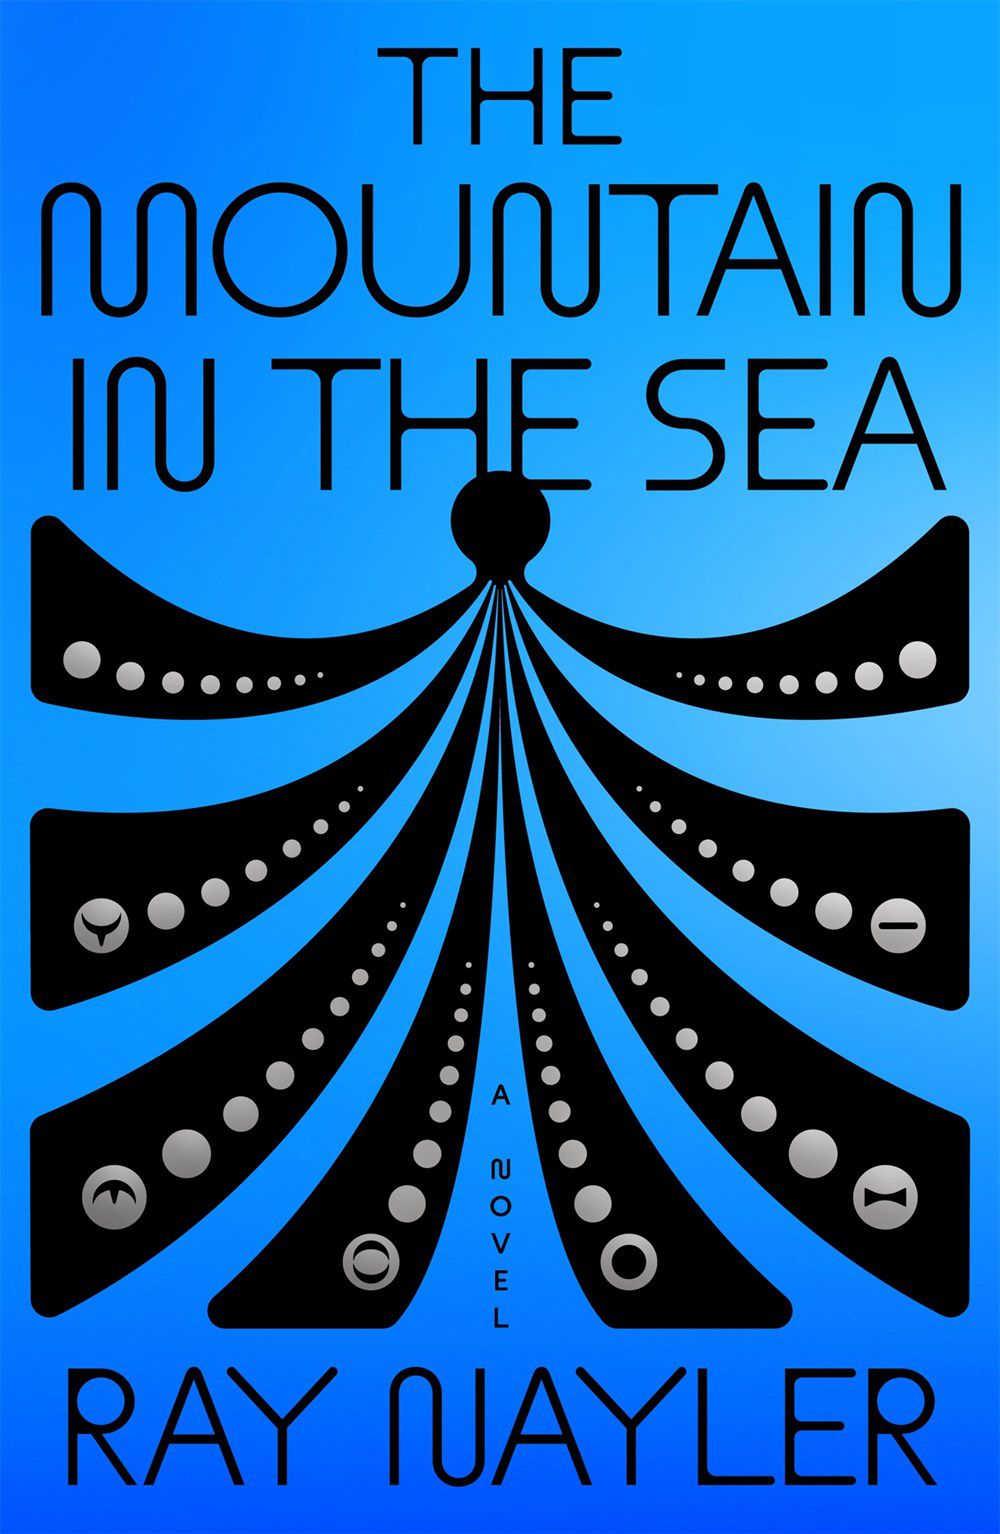 Immagine di copertina per The Mountain in the Sea di Ray Nayler, con una figura illustrata simile a un polpo con simboli all'estremità di ogni 